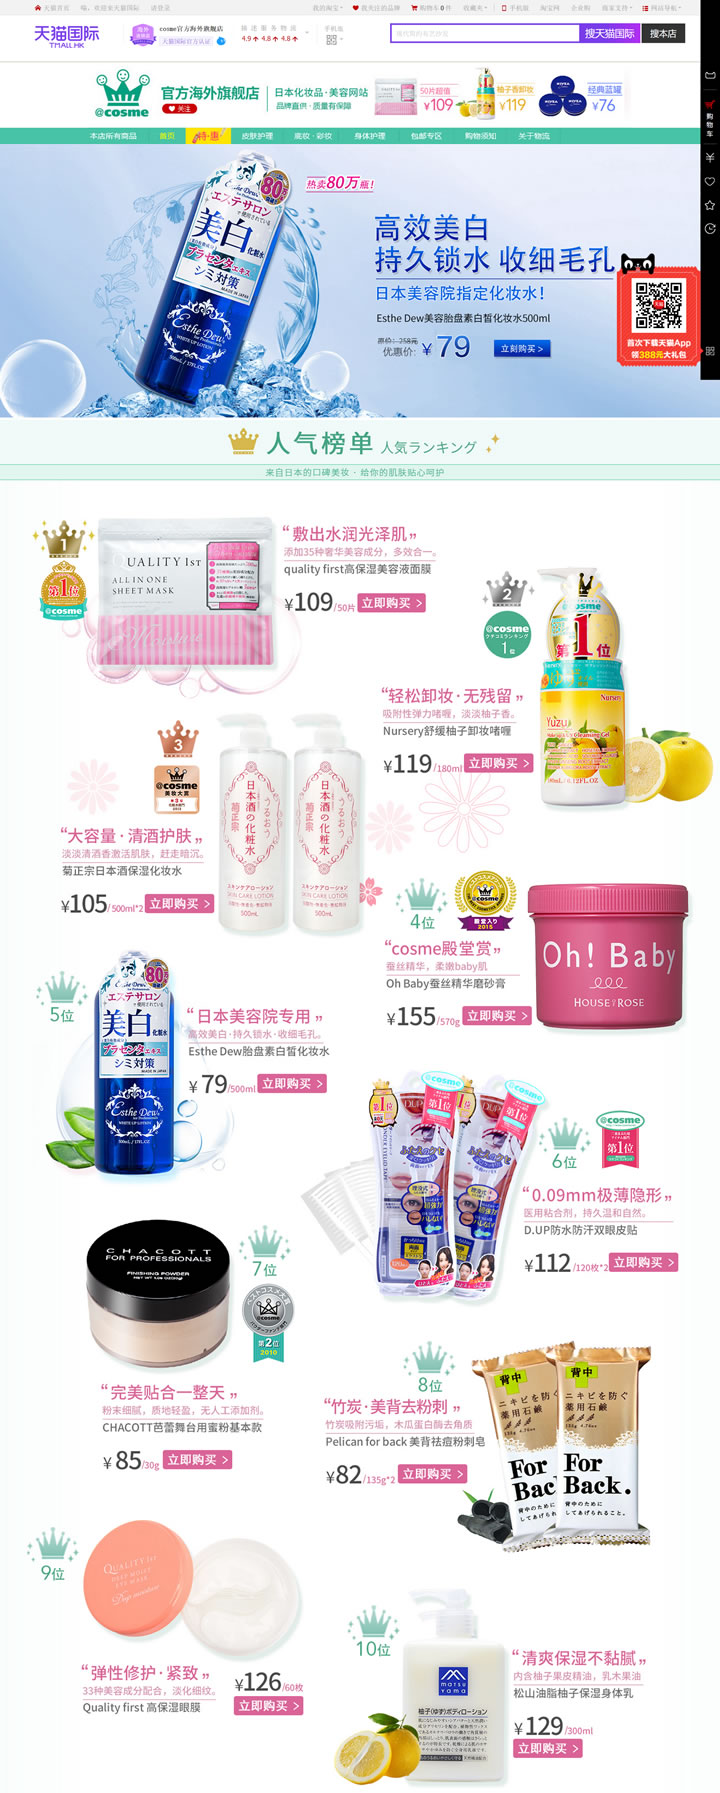 cosme官方海外旗舰店：日本最大化妆品和美容产品的综合口碑网站